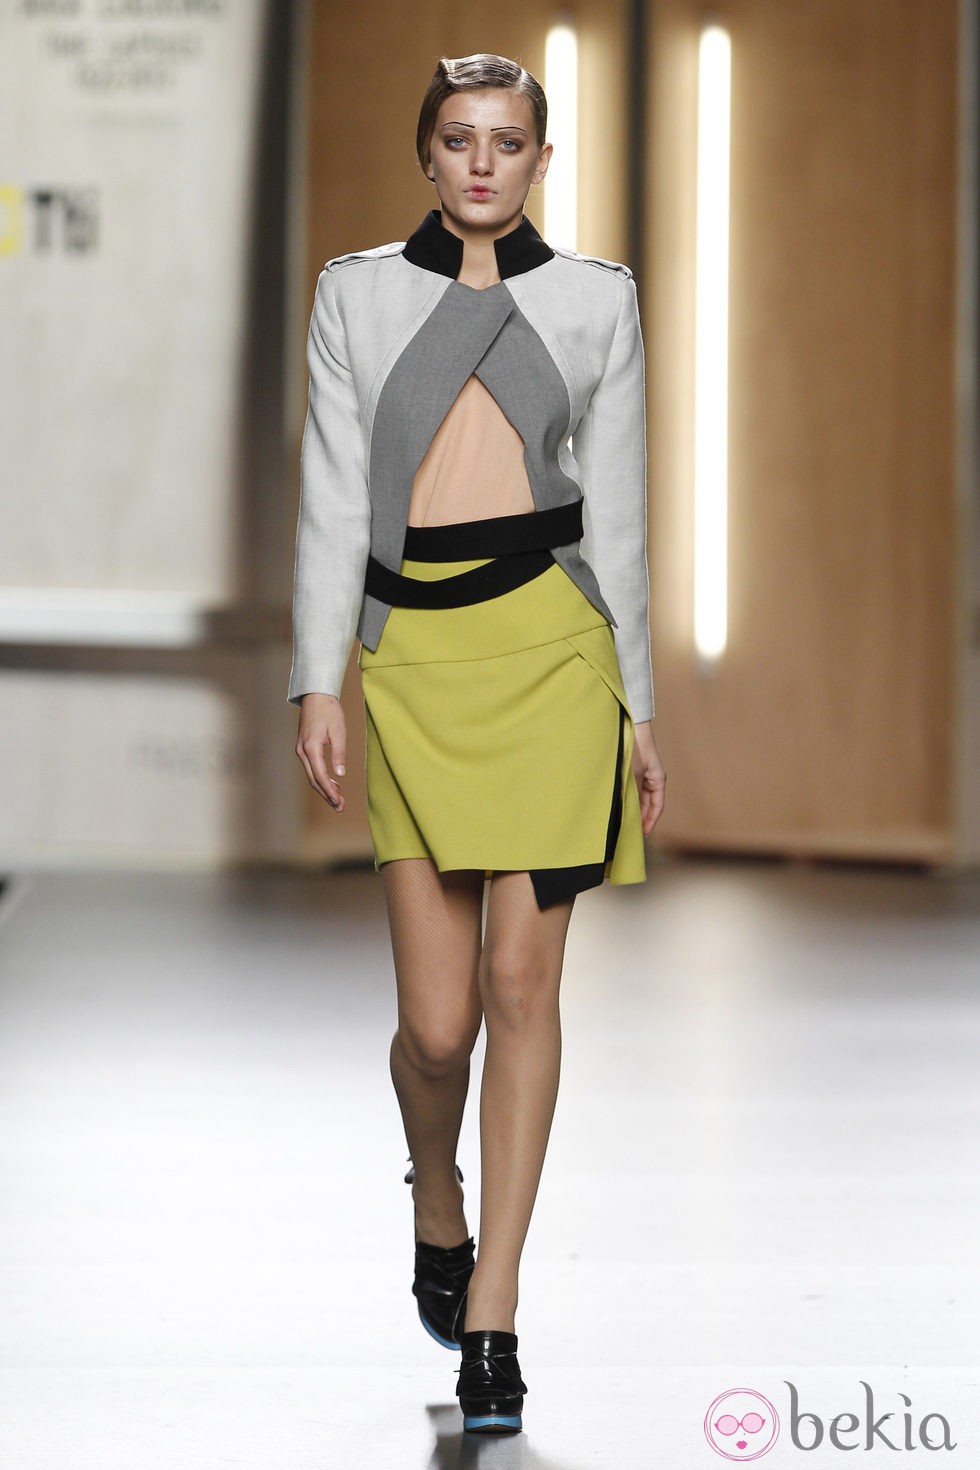 Falda amarillo limón y chaqueta en tonos grises de Ana Locking en Fashion Week Madrid